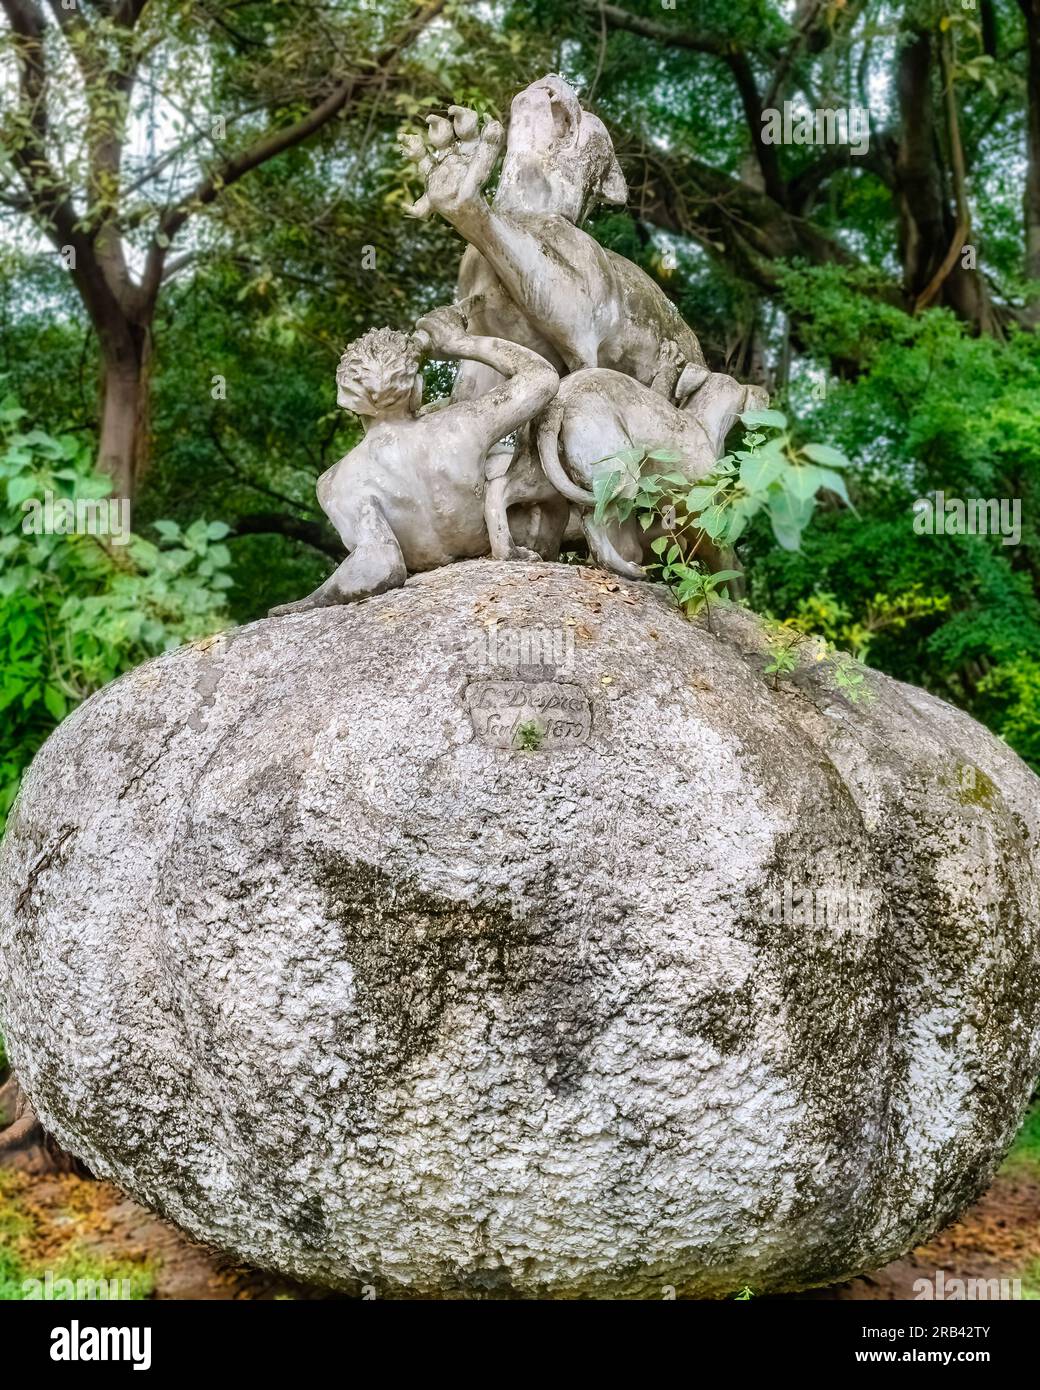 Rio DE JANEIRO, BRASIL - 15 DE JUNIO DE 2023: Arte escultórico en la parte superior de una gran piedra en un parque público Foto de stock